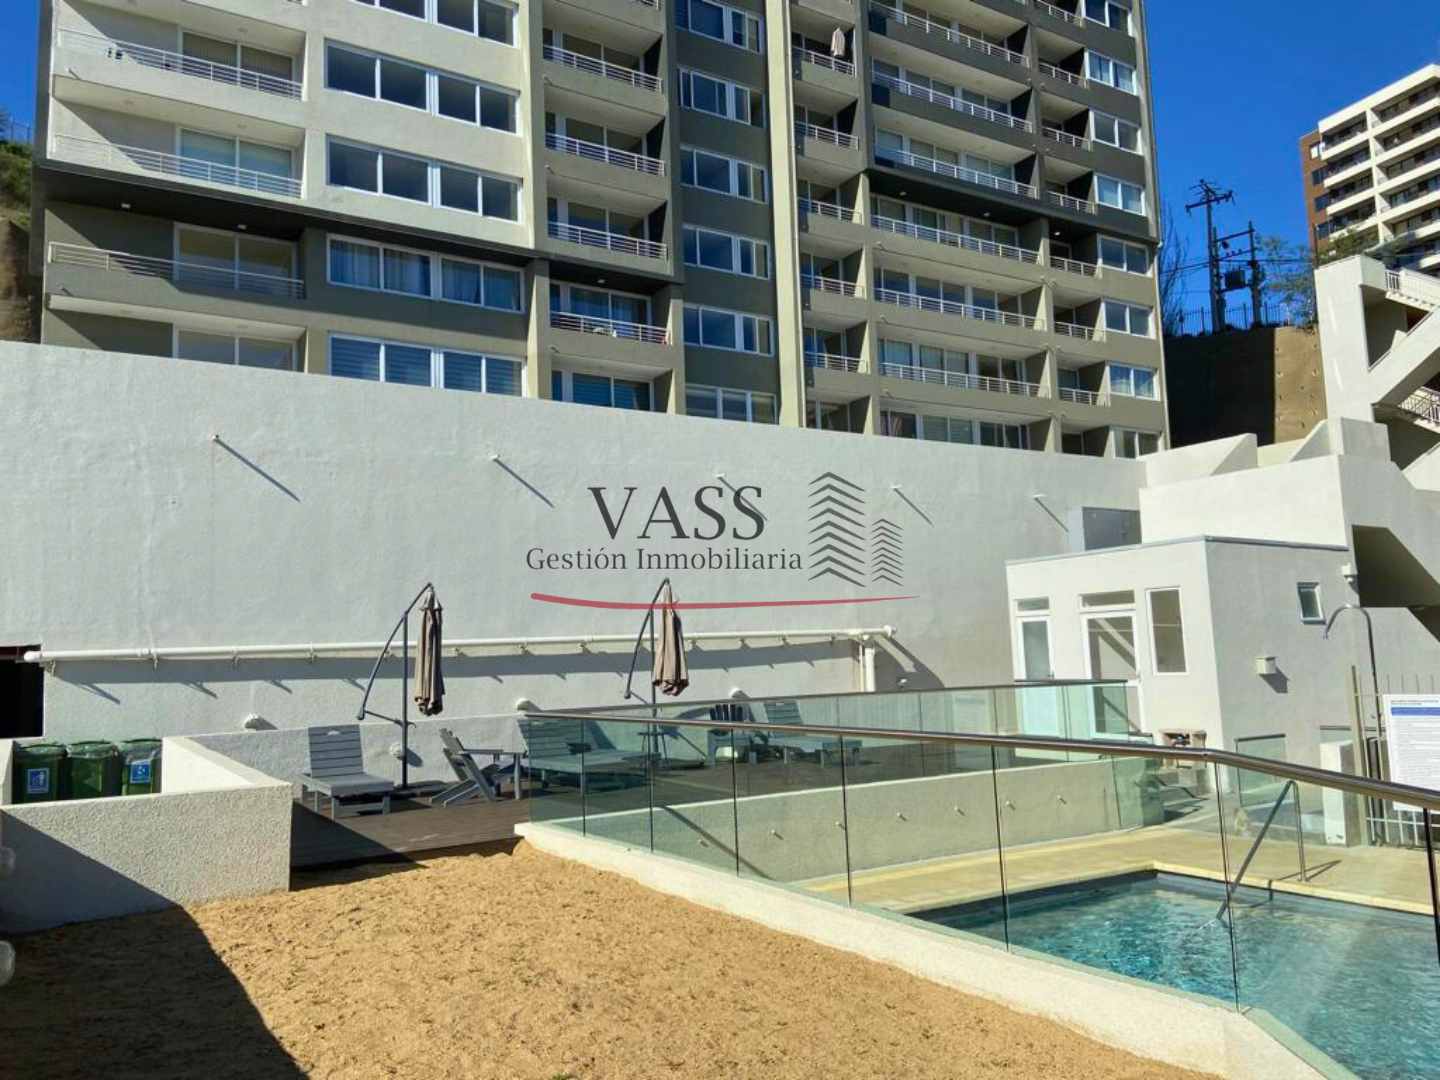 VASS Gestión Inmobiliaria vende departamento nuevo cercano al Jumbo de Viña del Mar